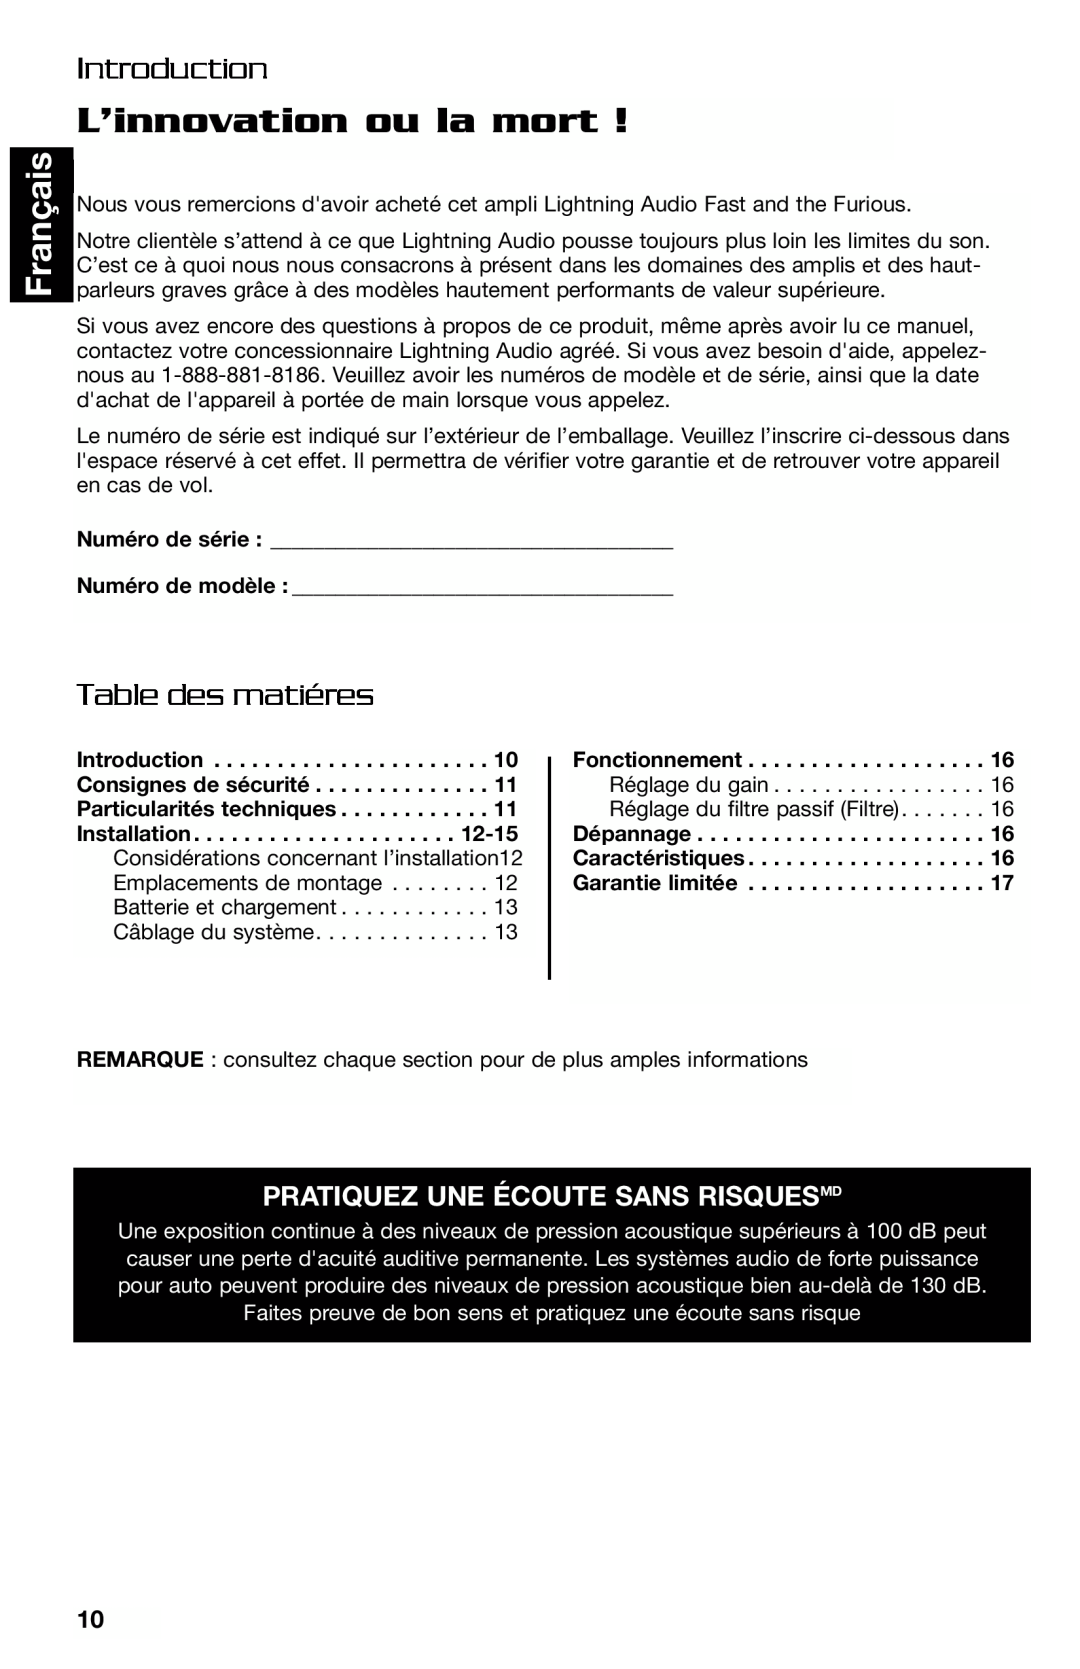 Lightning Audio FF250.1, FF150.2 manual L’innovation ou la mort, Français, Table des matiéres, Introduction 